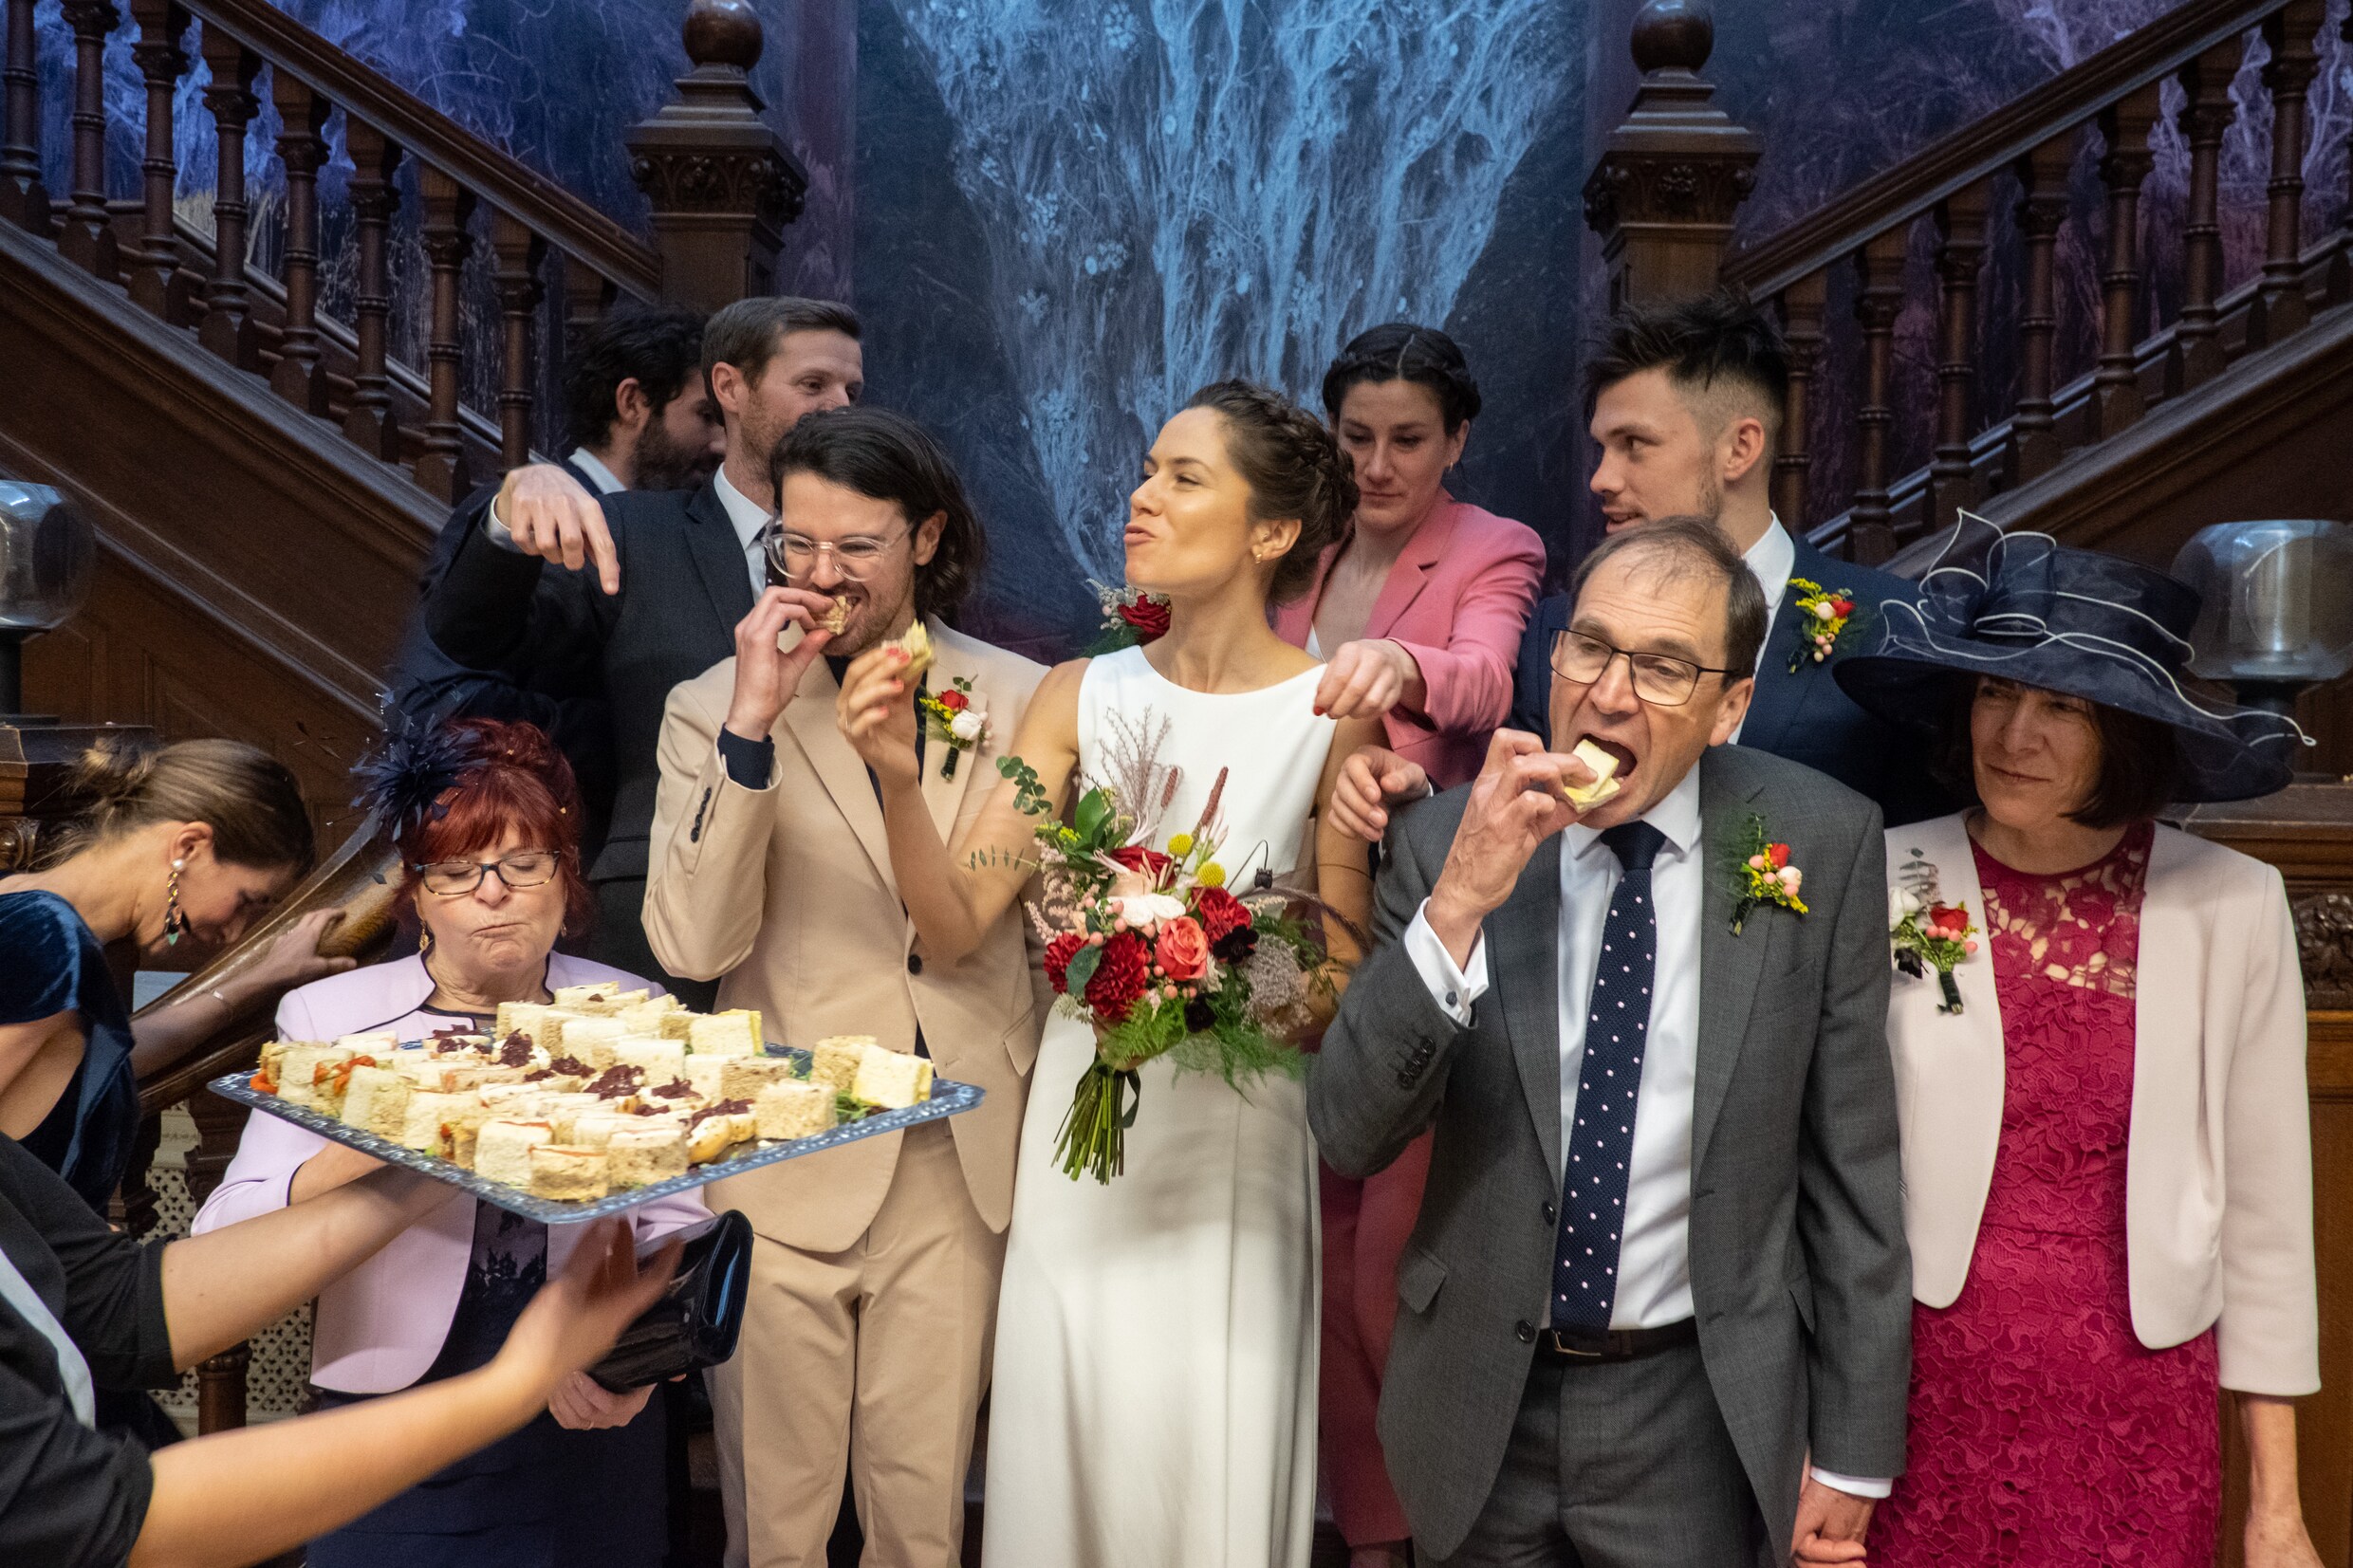 Komische familiemomenten met te veel drank: deze fotograaf toont trouwfeesten zoals ze werkelijk zijn